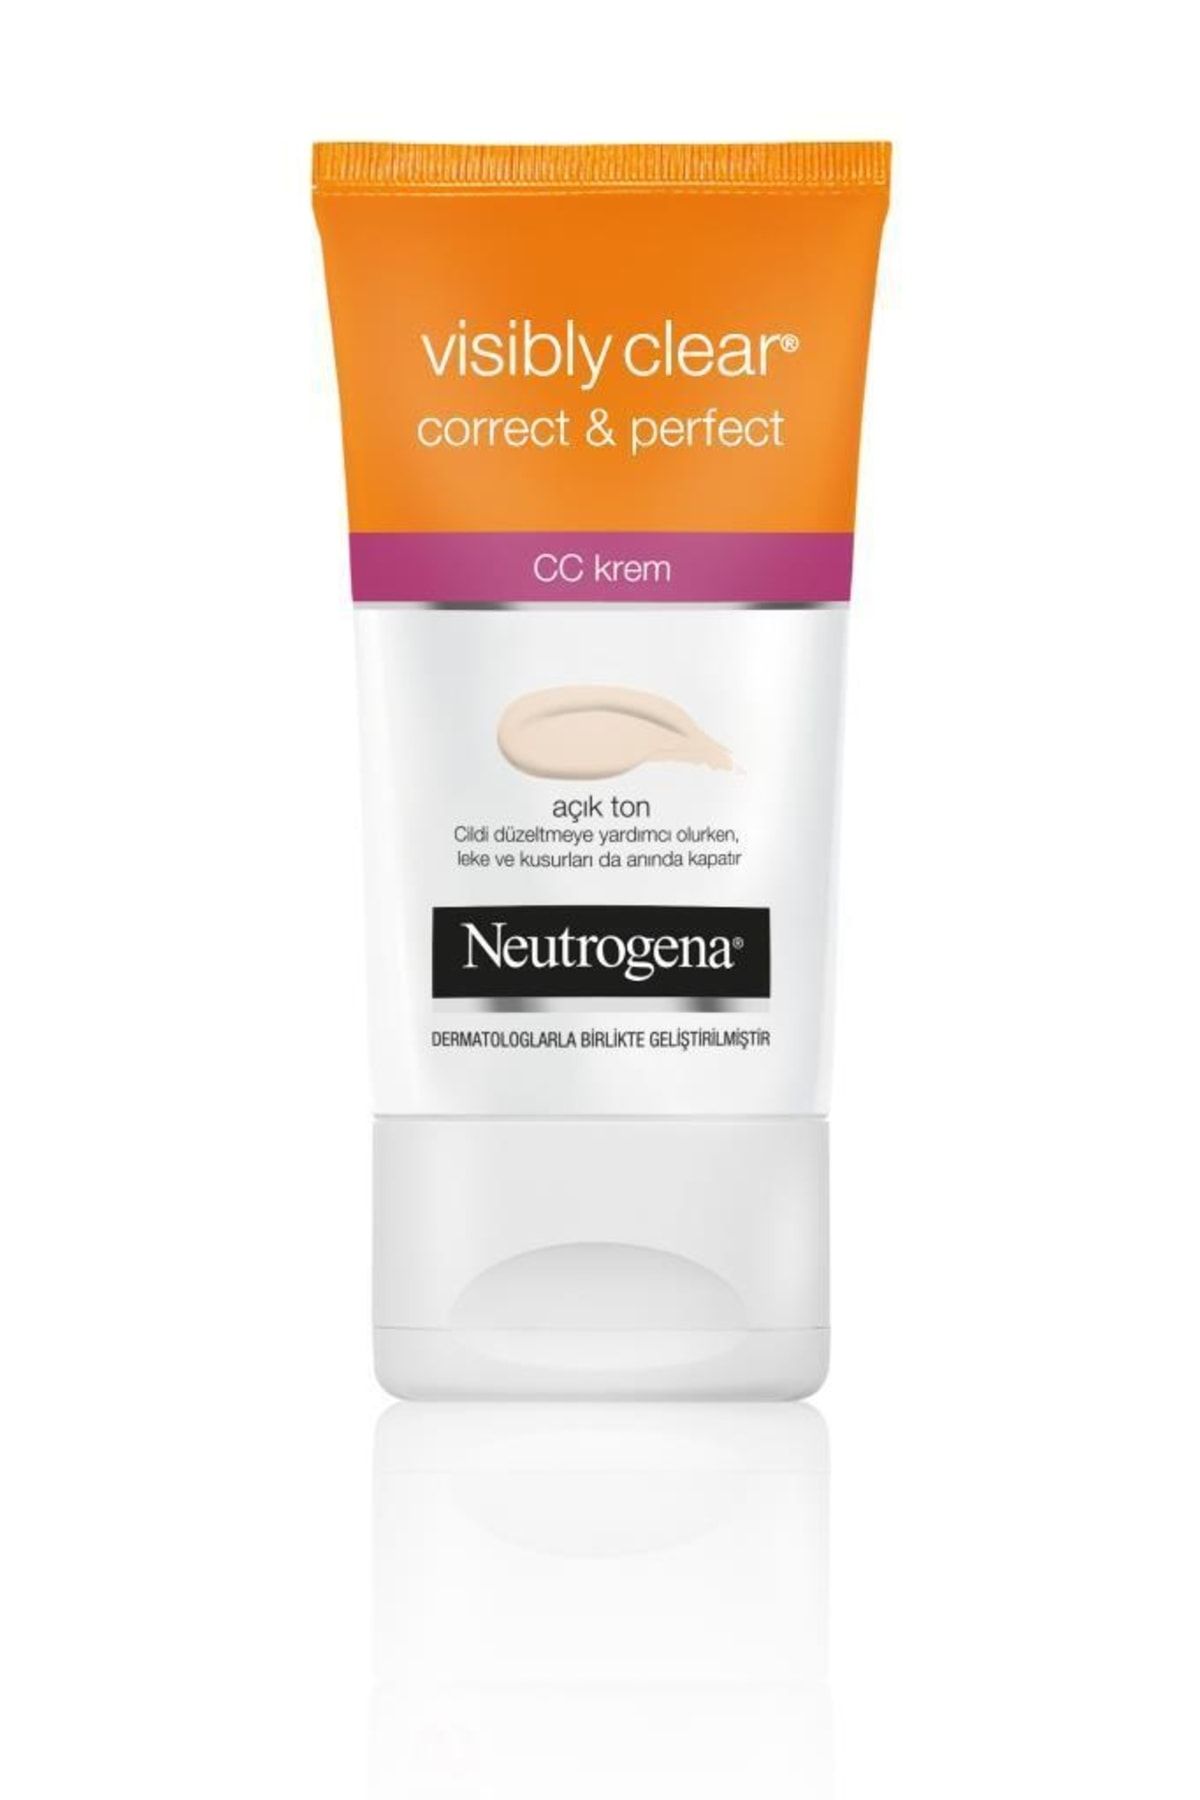 Neutrogena Visibly Clear Correct & Perfect CC Krem Açık Ton 50 ml